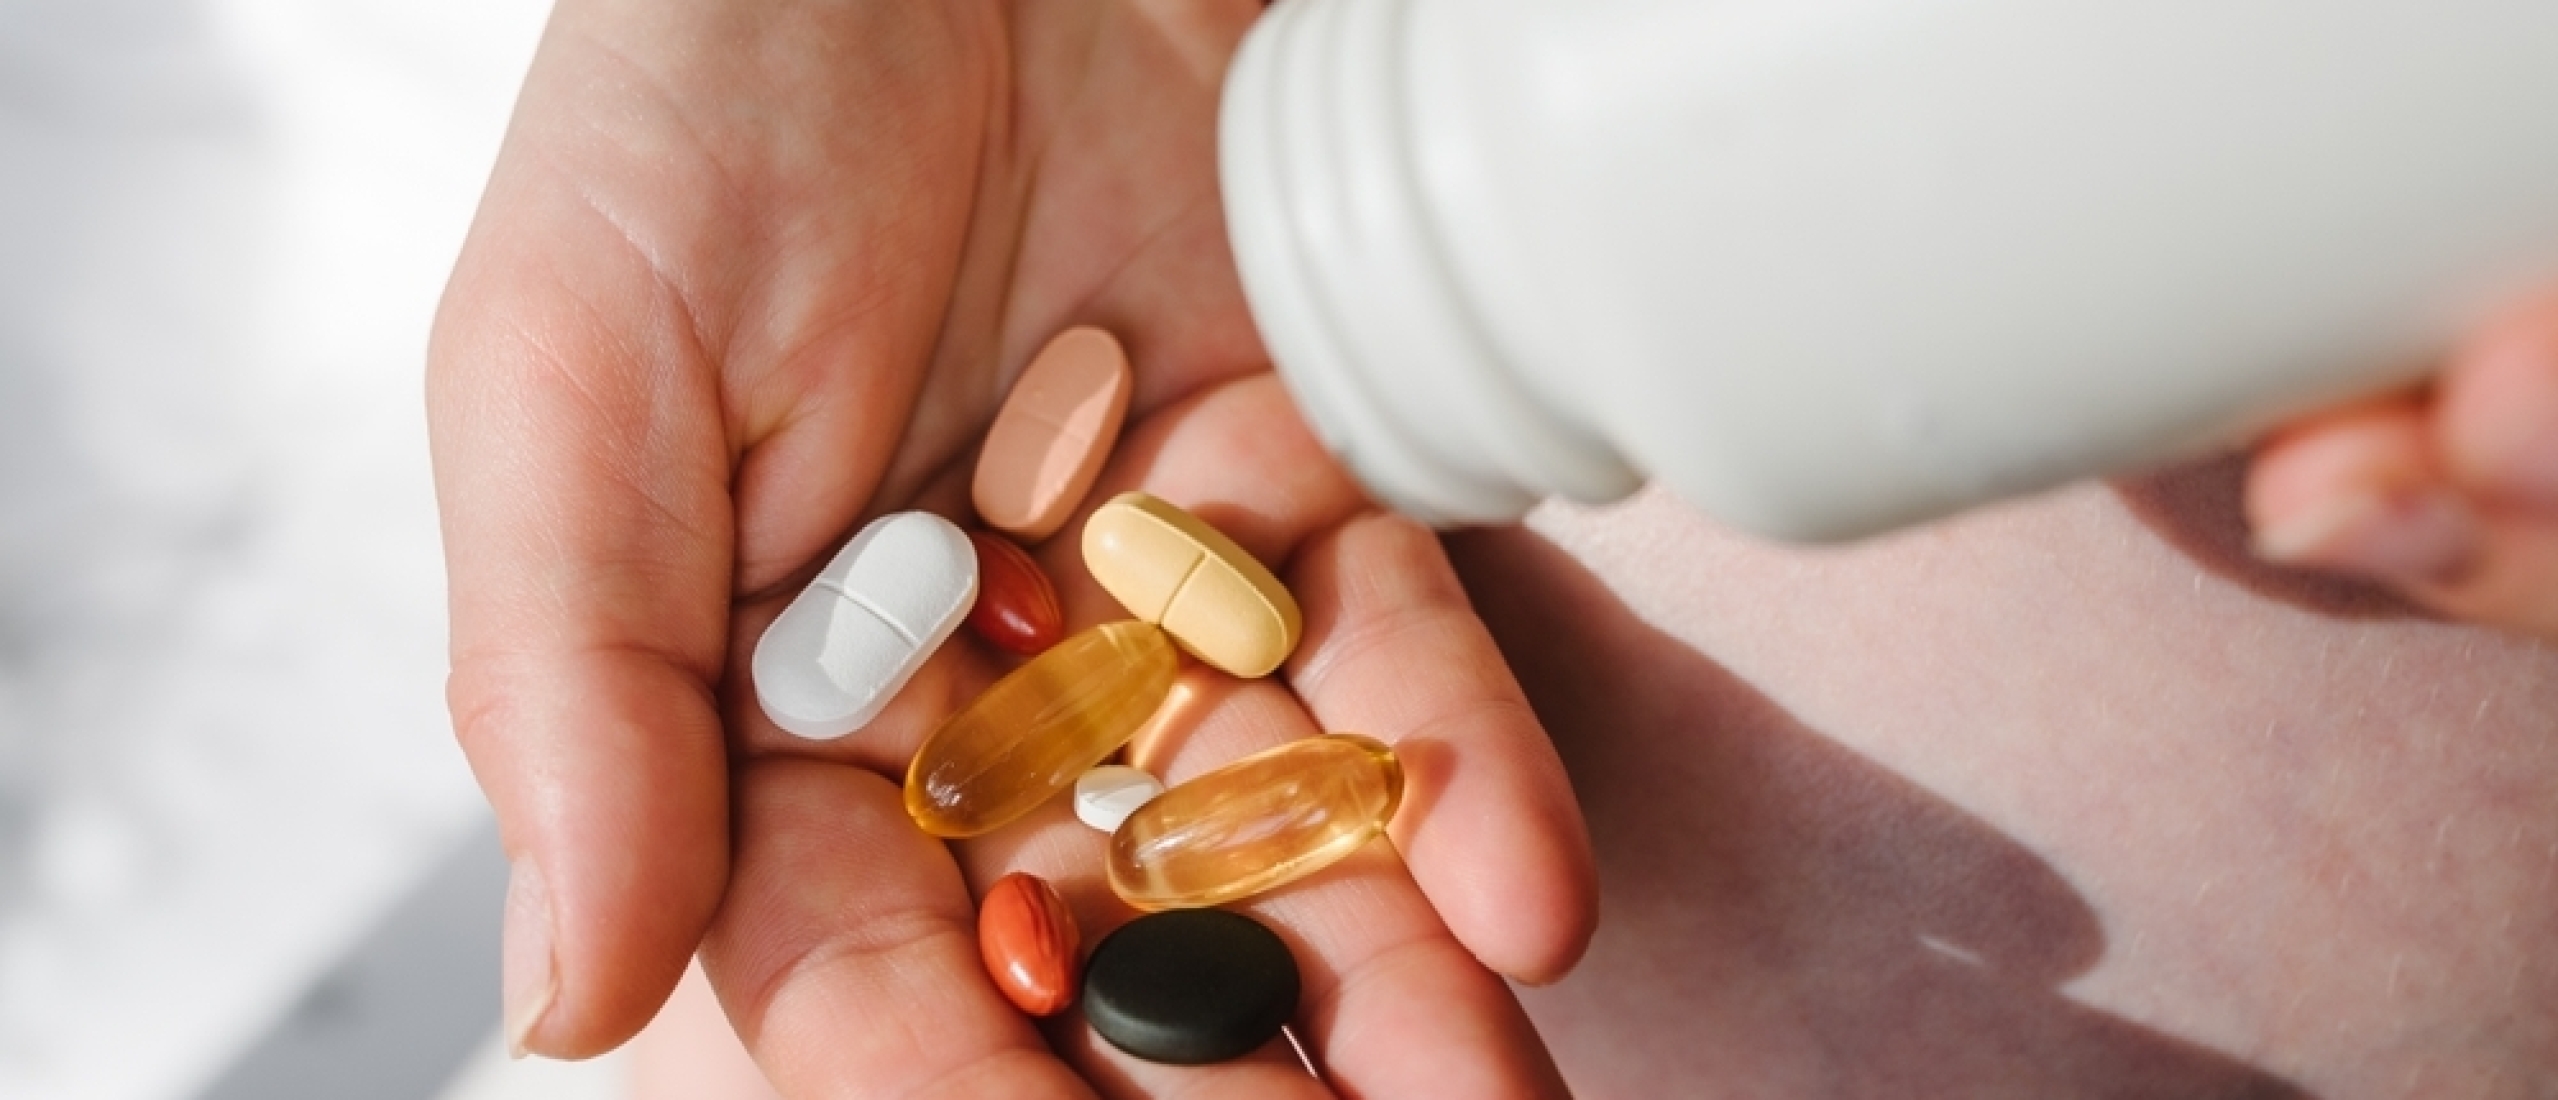 Welke supplementen zijn essentieel voor een goede gezondheid?